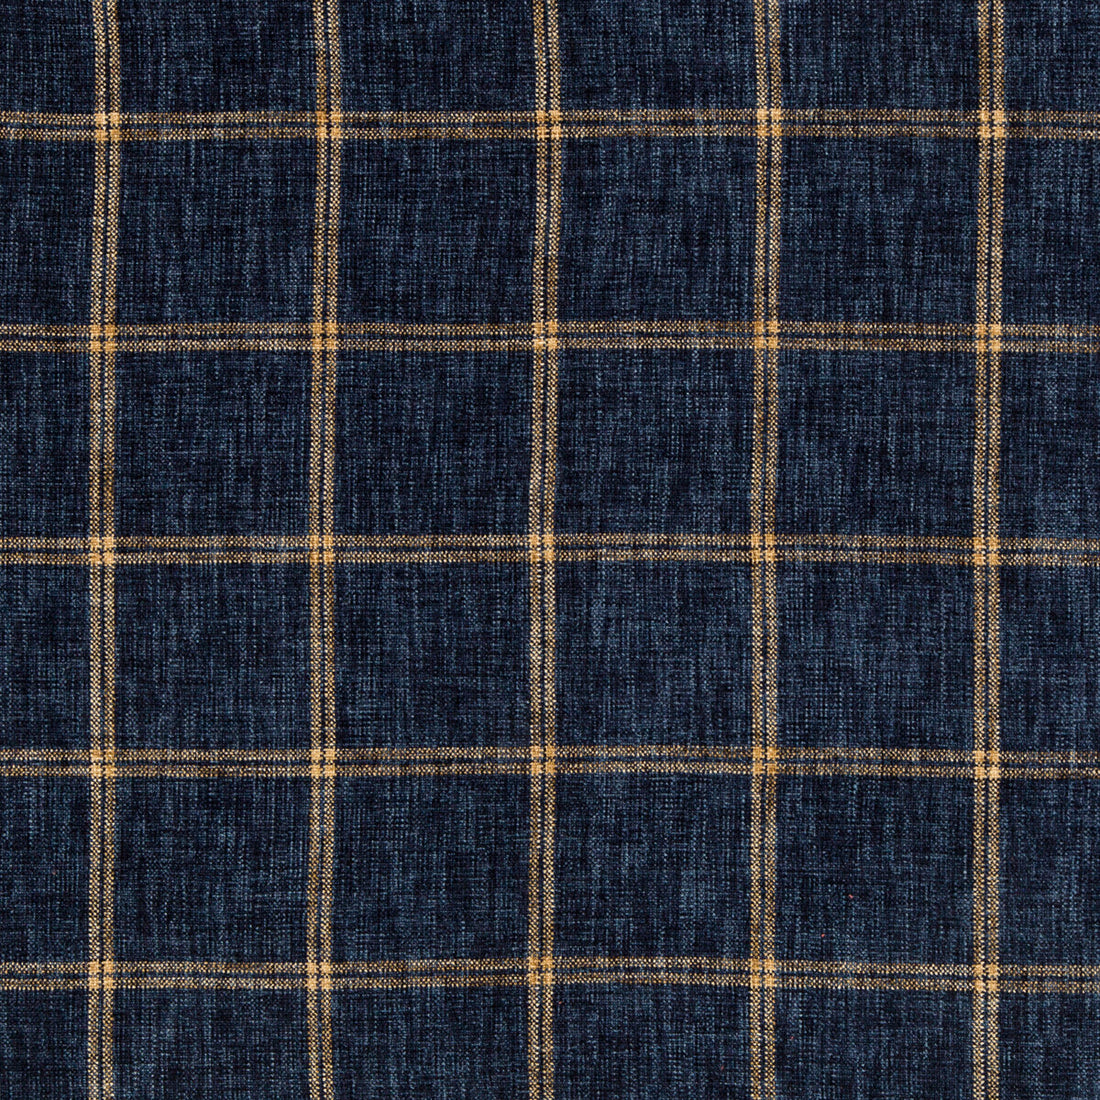 Kravet Basics fabric in 35774-516 color - pattern 35774.516.0 - by Kravet Basics